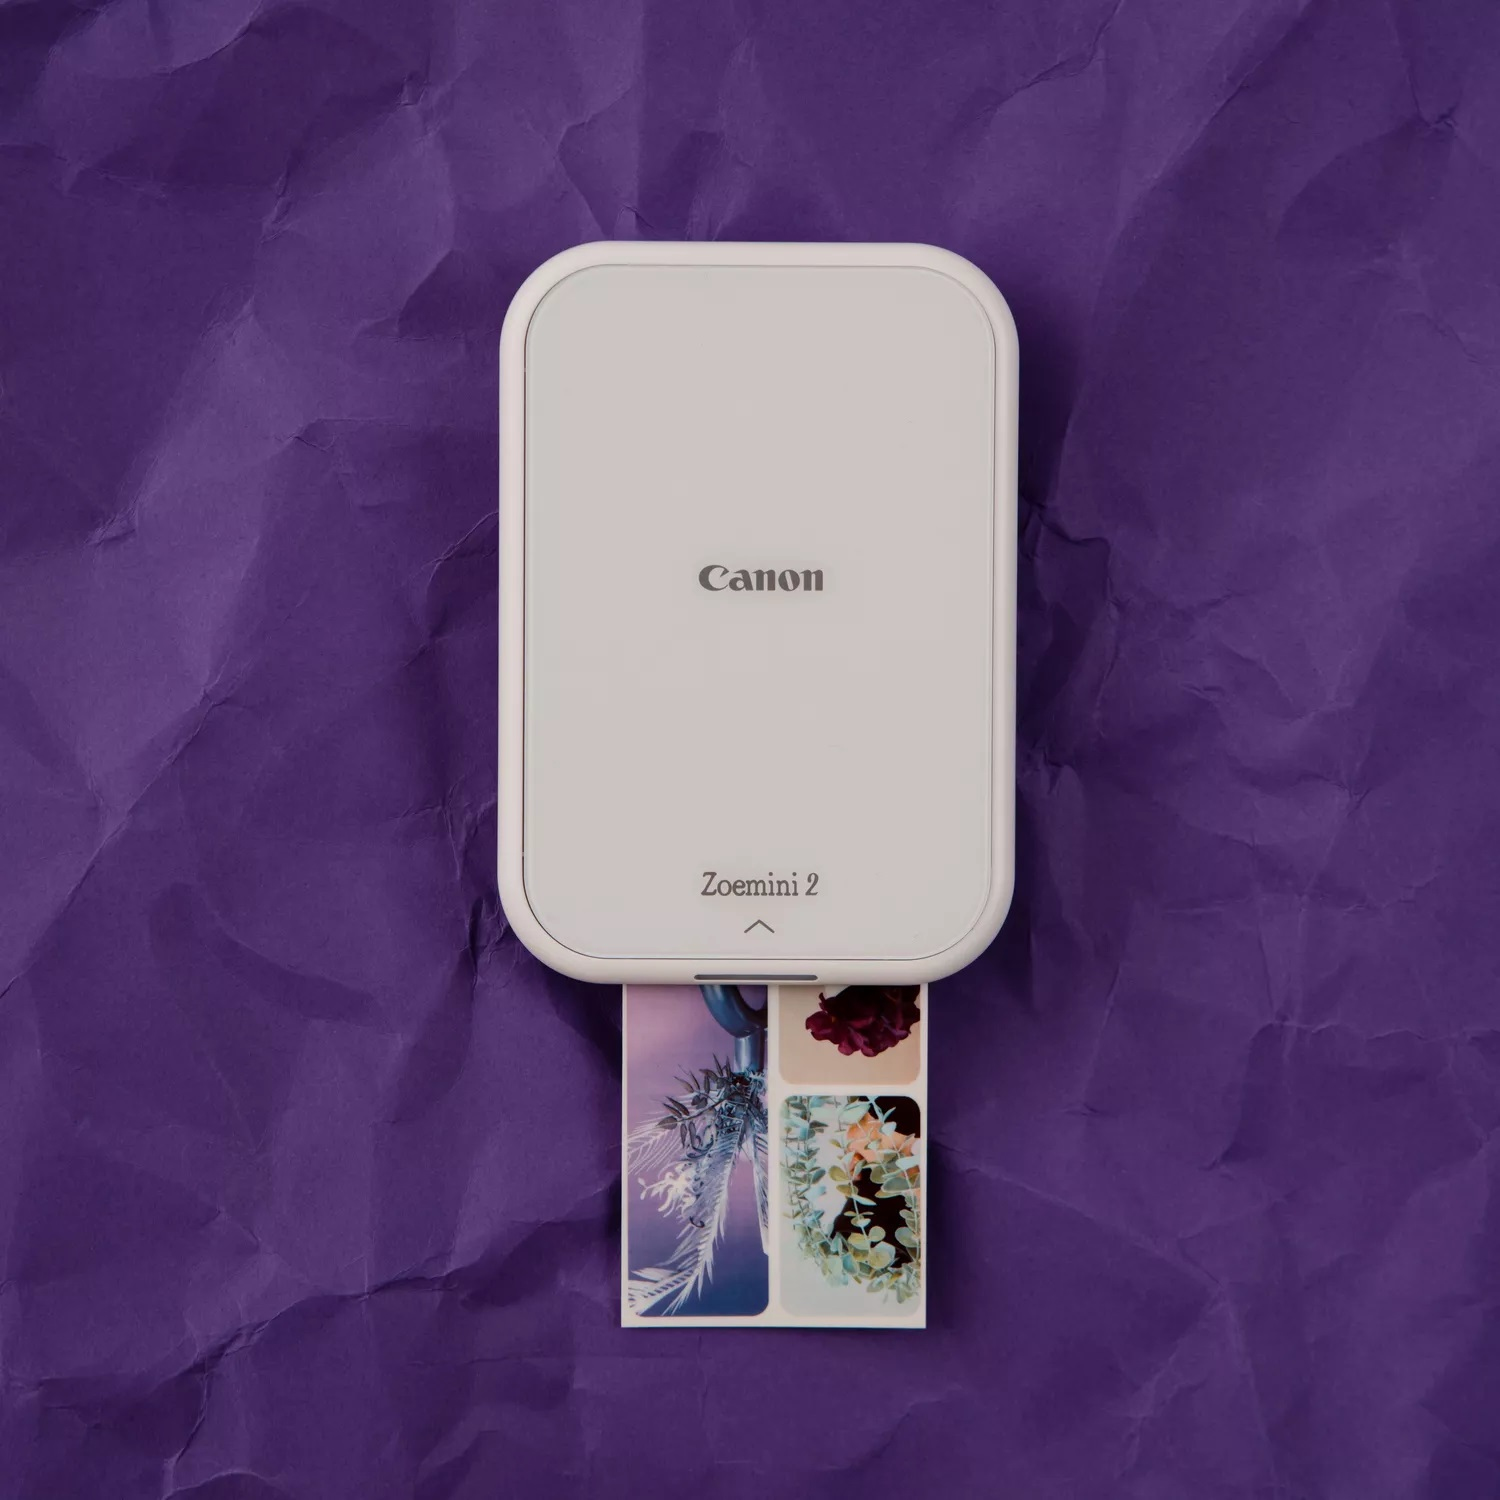 Canon Zoemini 2 stampante per foto ZINK (inchiostro zero) 313 x 500 DPI 2 x  3 (5x7.6 cm)